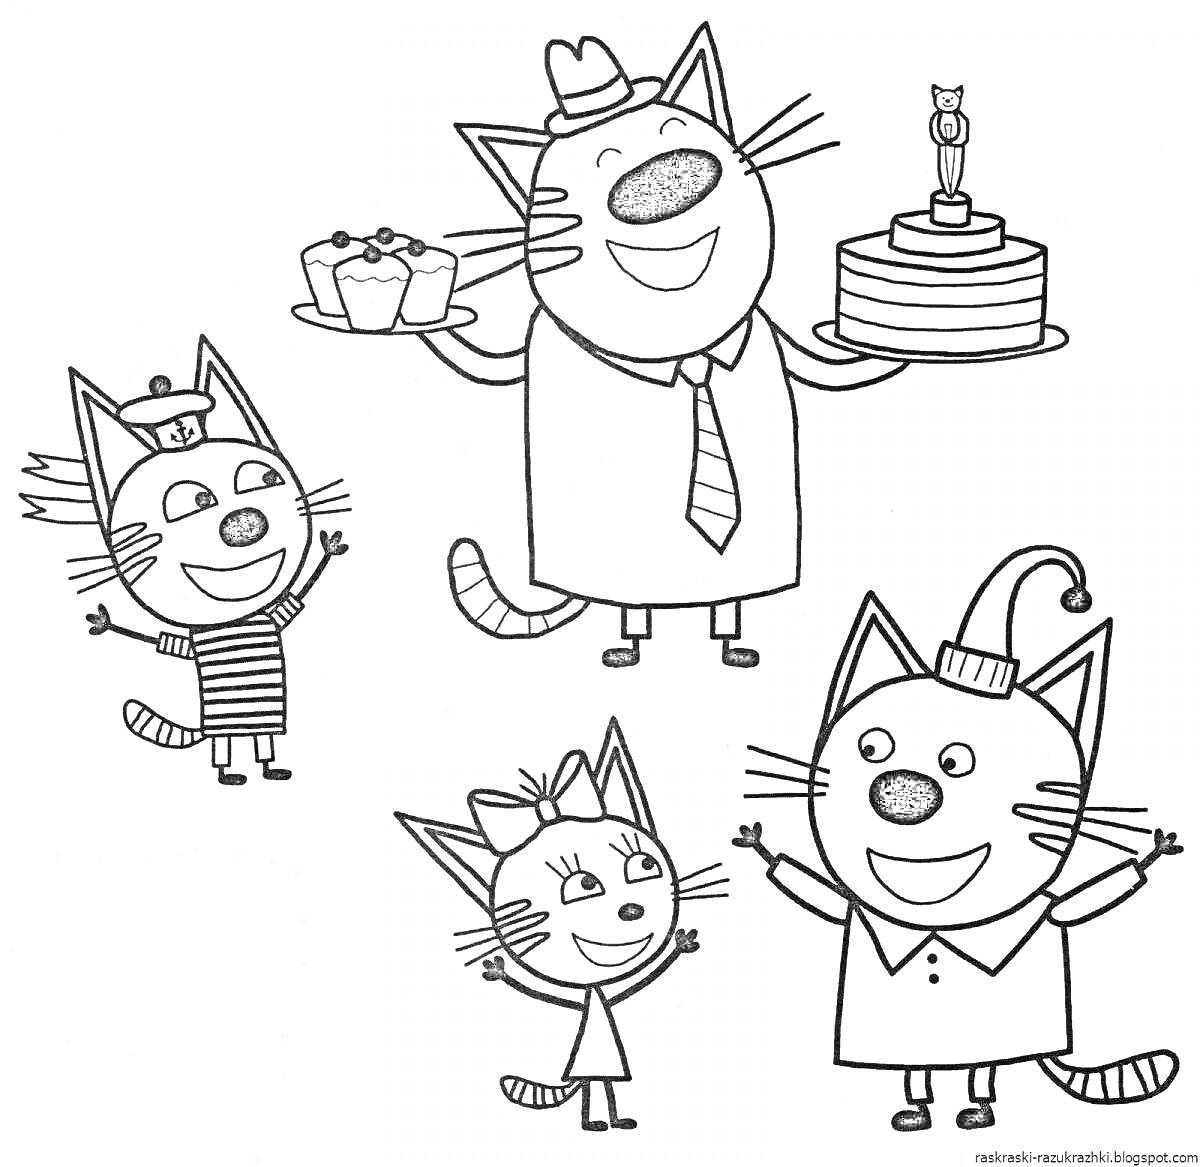 Раскраска четыре кота с кружкой и тарелкой с кексами, тортом со свечкой, маленькой котёнкой с бантиком, и котом в колпаке